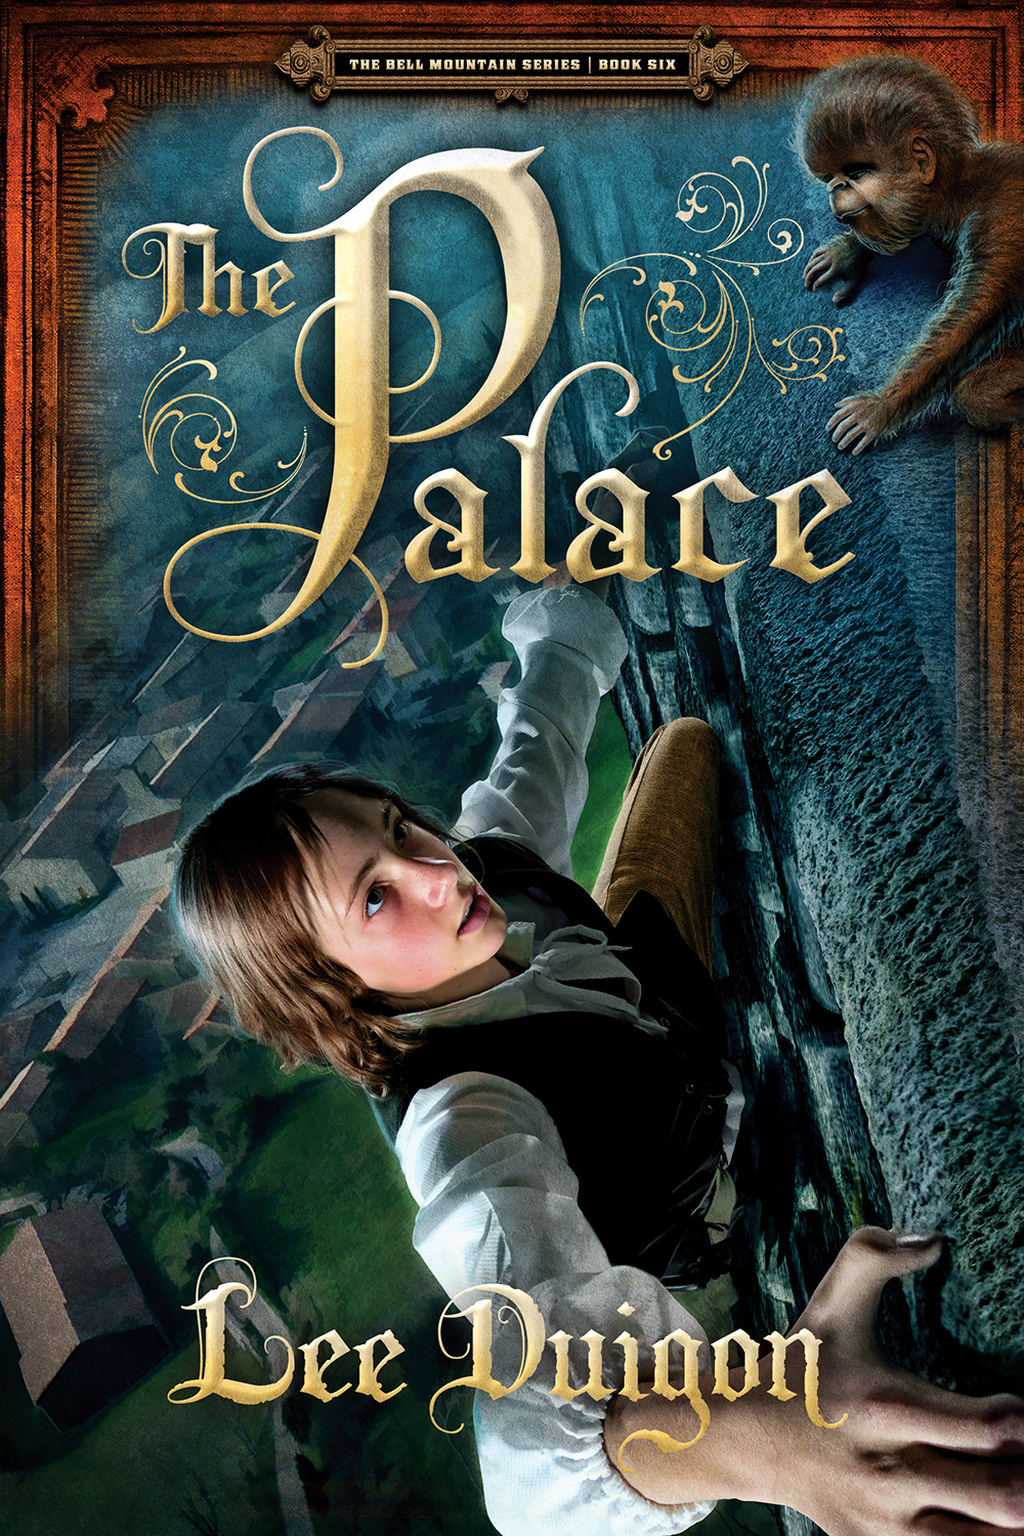 Palace Kindle 2